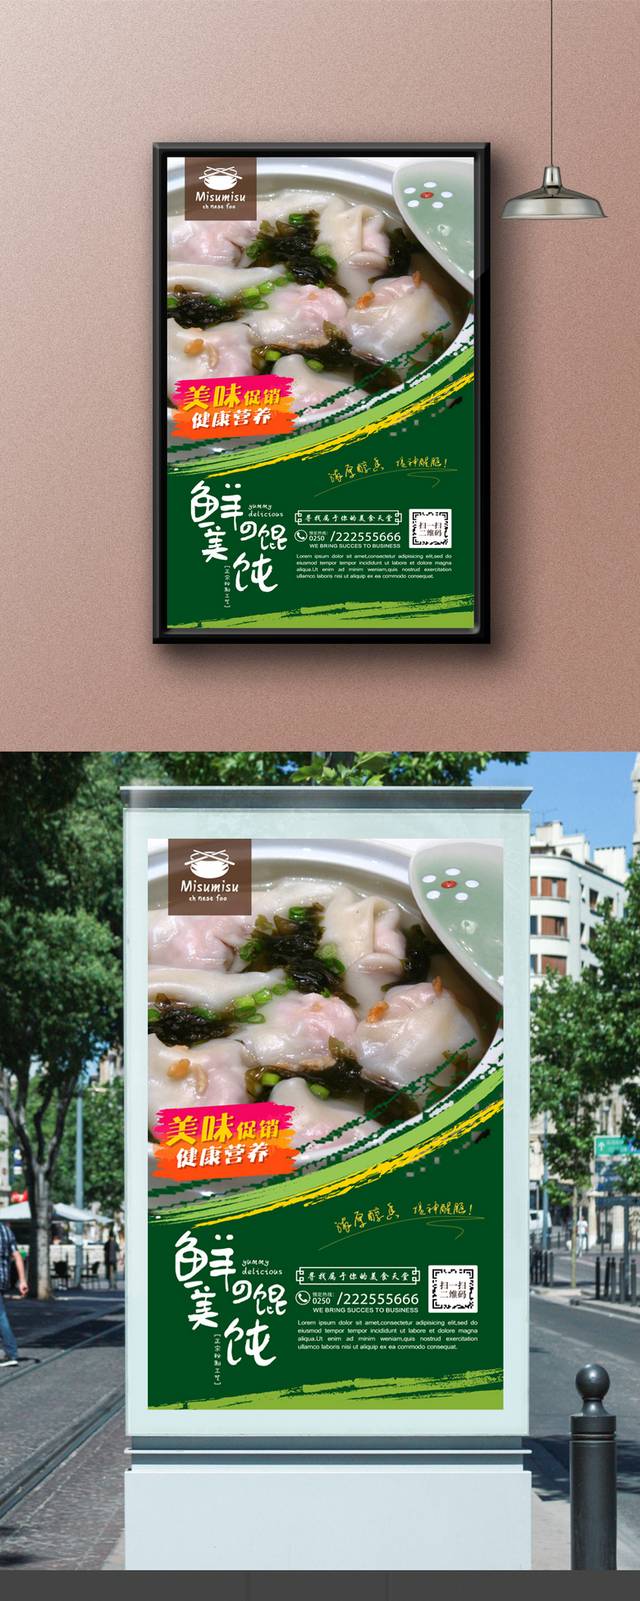 三鲜馄饨美食促销海报